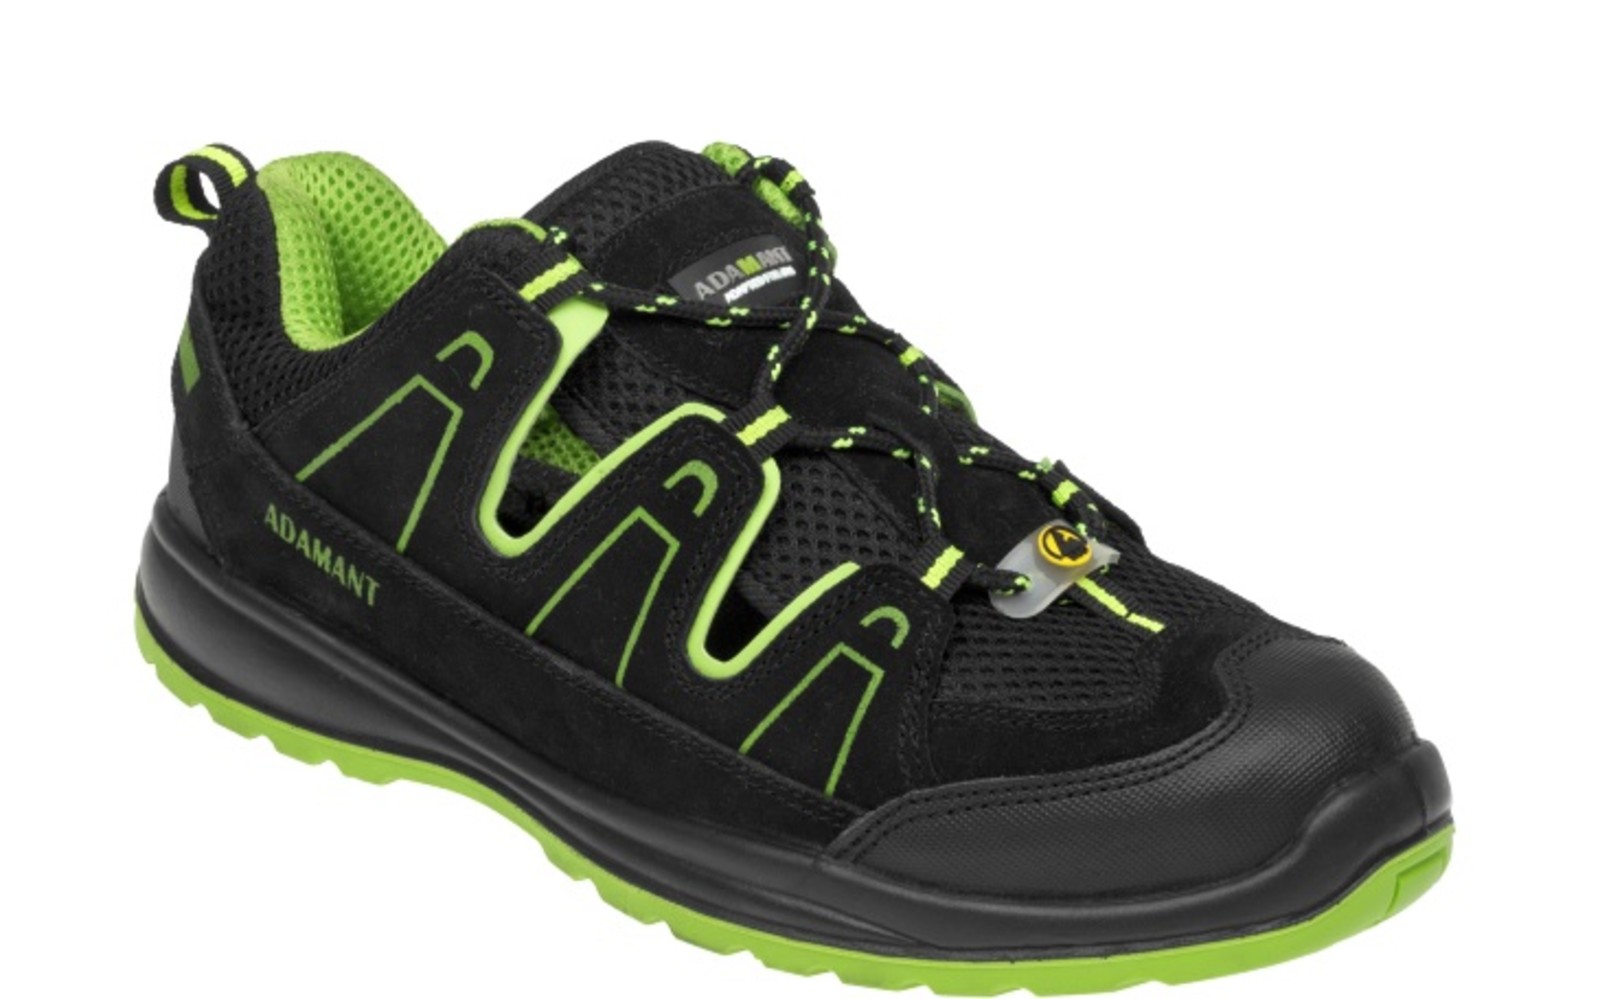 Bezpečnostné sandále Adamant Alegro S1 ESD - veľkosť: 40, farba: čierna/zelená